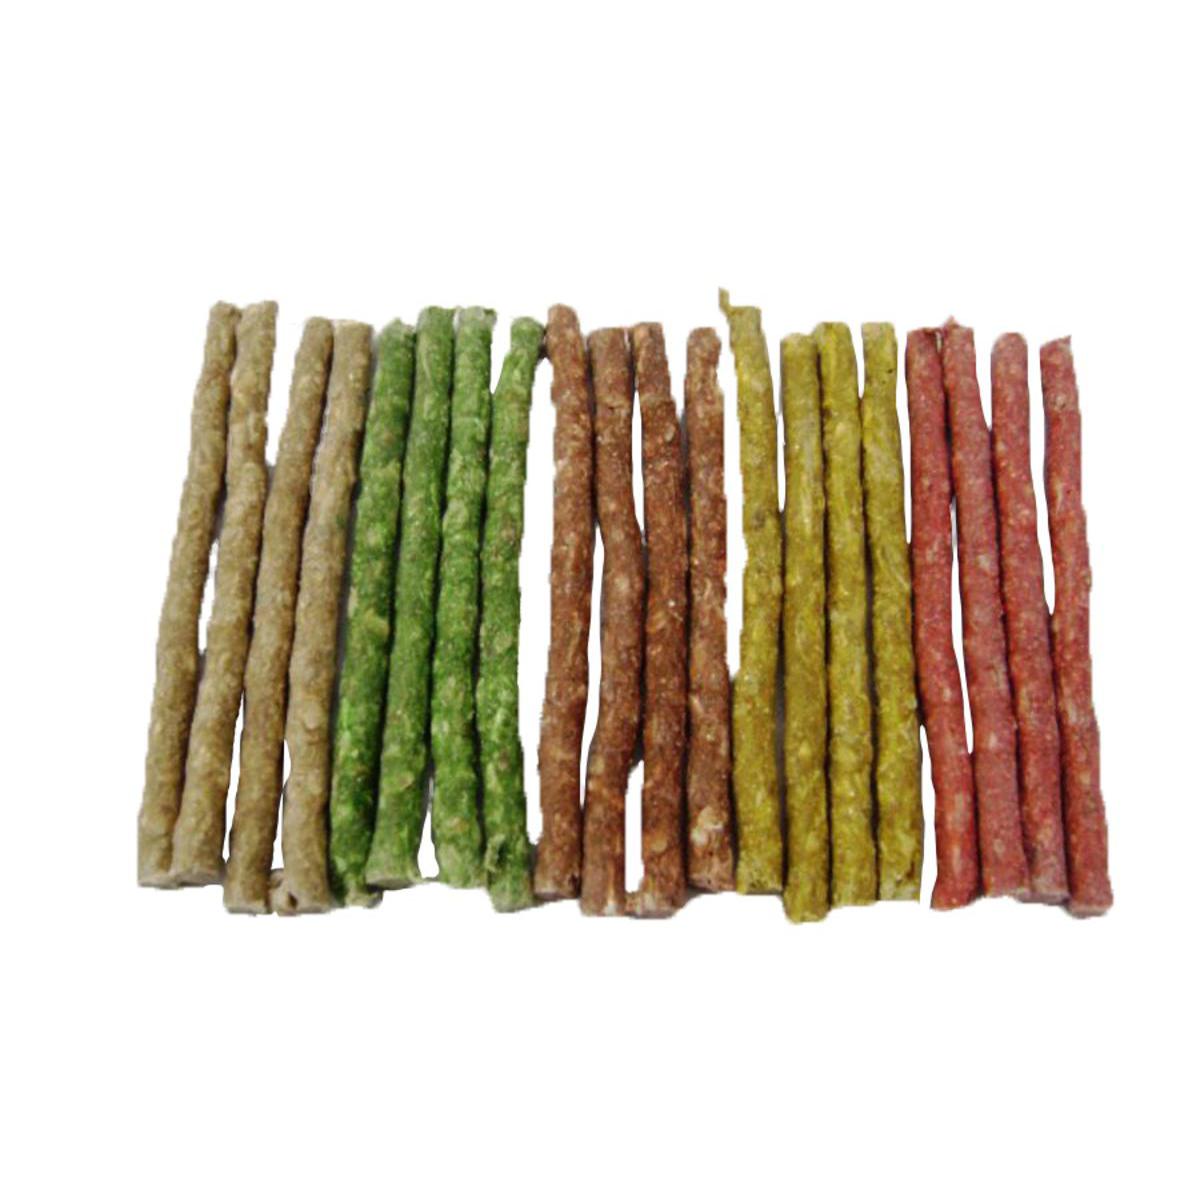 Lot de 20 bâtonnets aromatisés - Peau de buffle - D 0,8 x 13 cm - Vert, jaune, blanc ou rouge